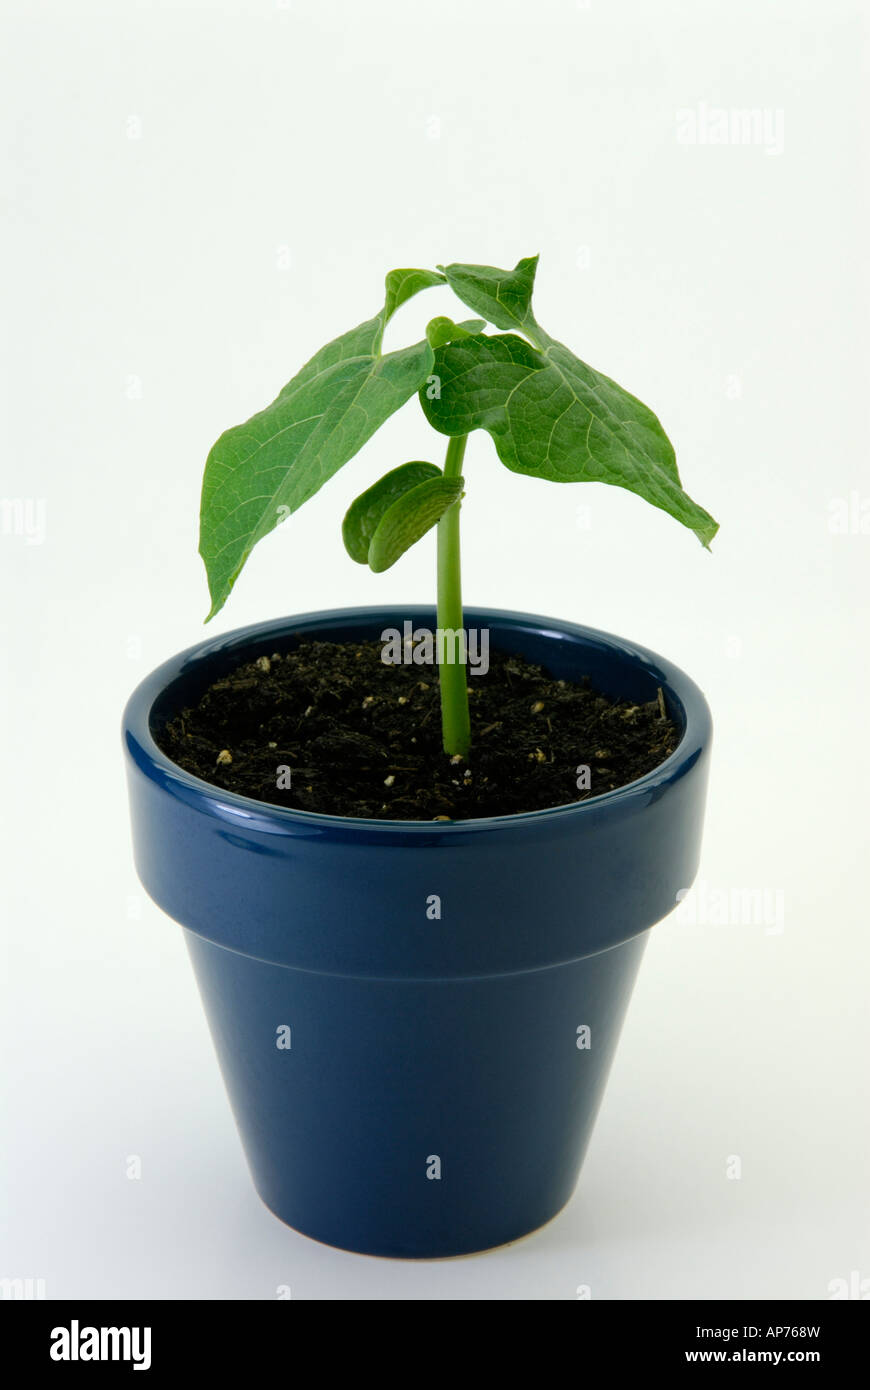 Haricot en pot plante, Phaseolus vulgaris, le haricot commun plante en pot en céramique bleu Banque D'Images